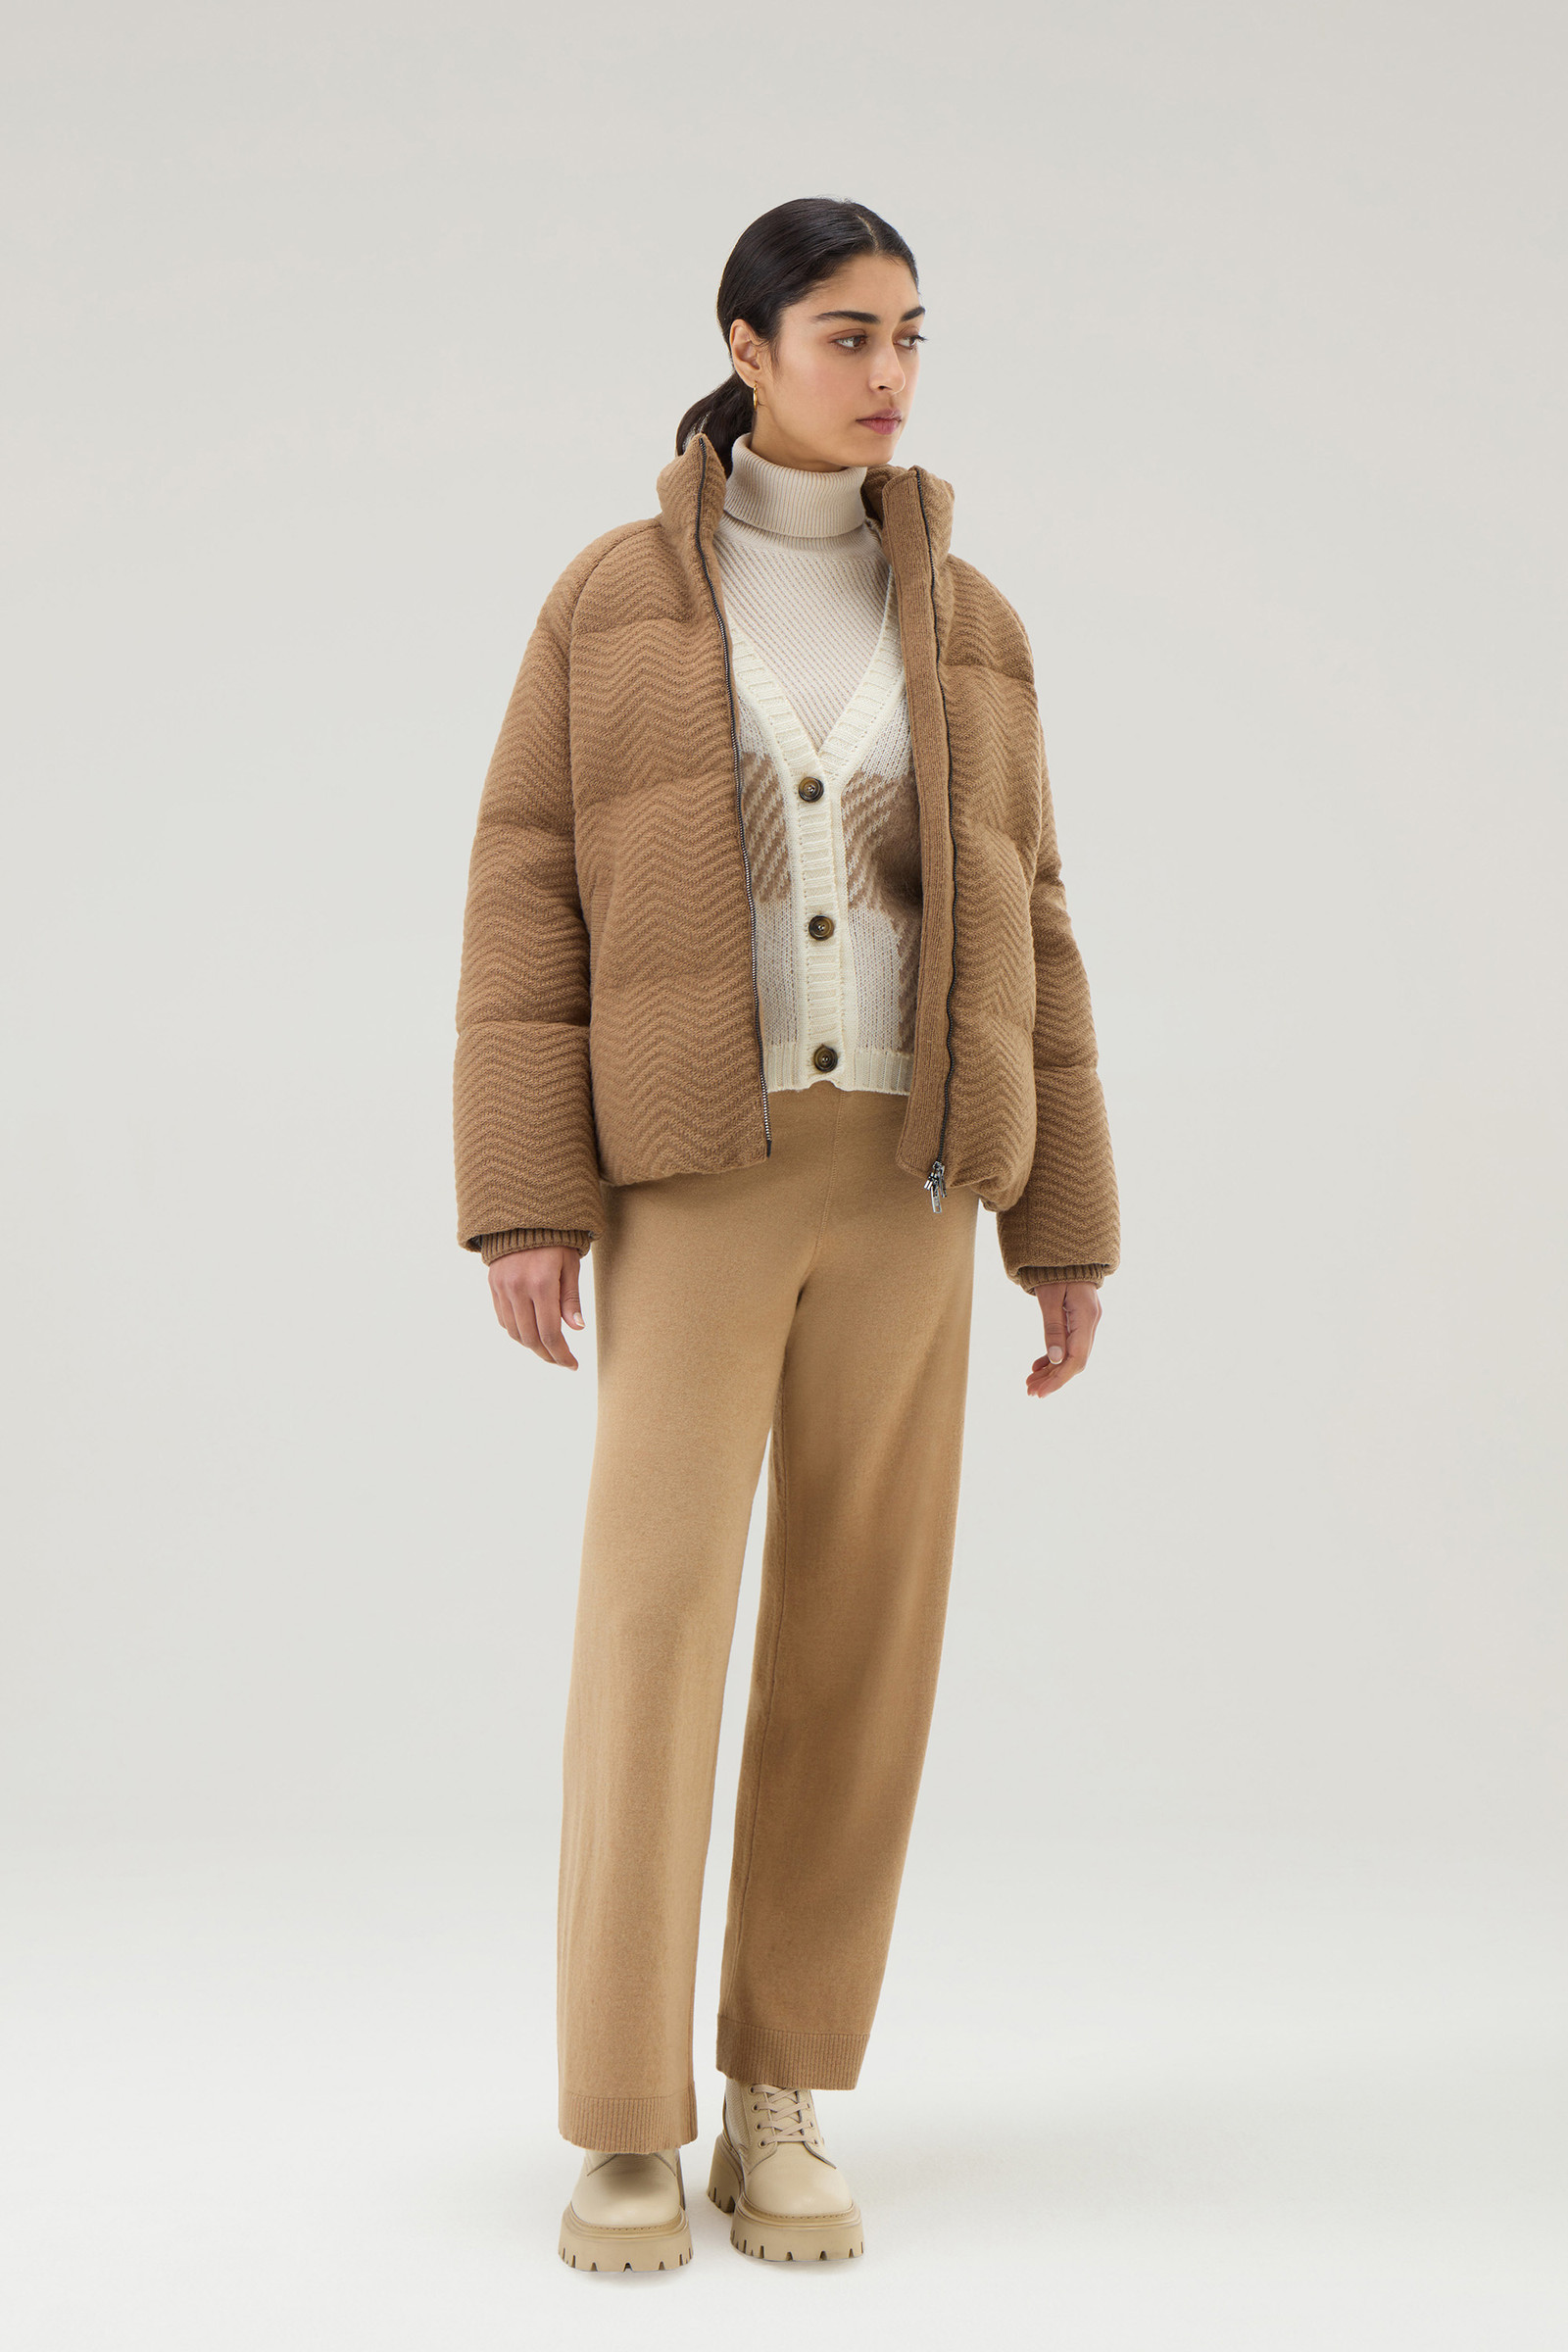 Women's Down Jacket in Italian Wool Blend Brown | Woolrich USA